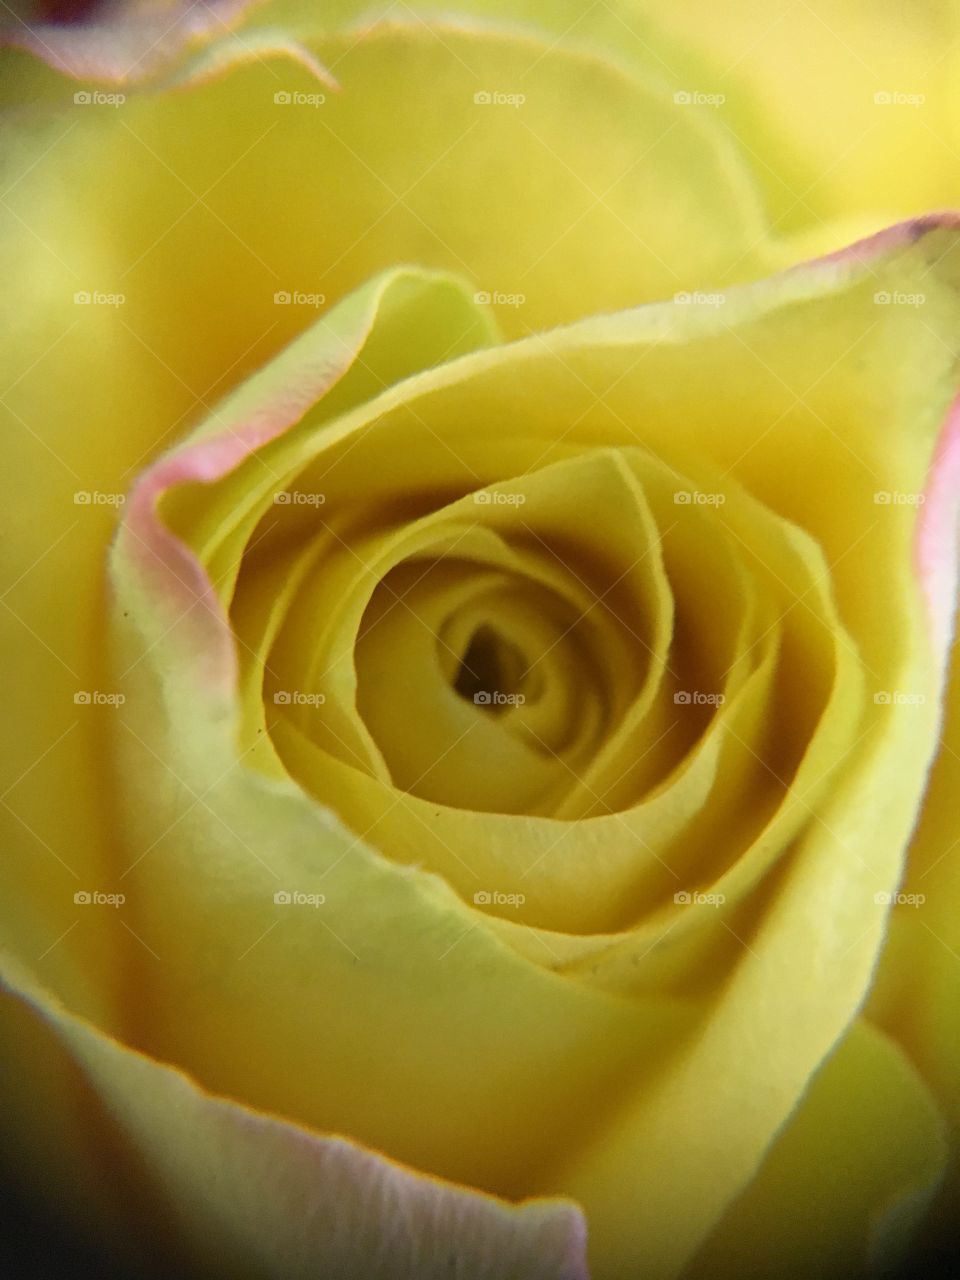 Close up yellow rose